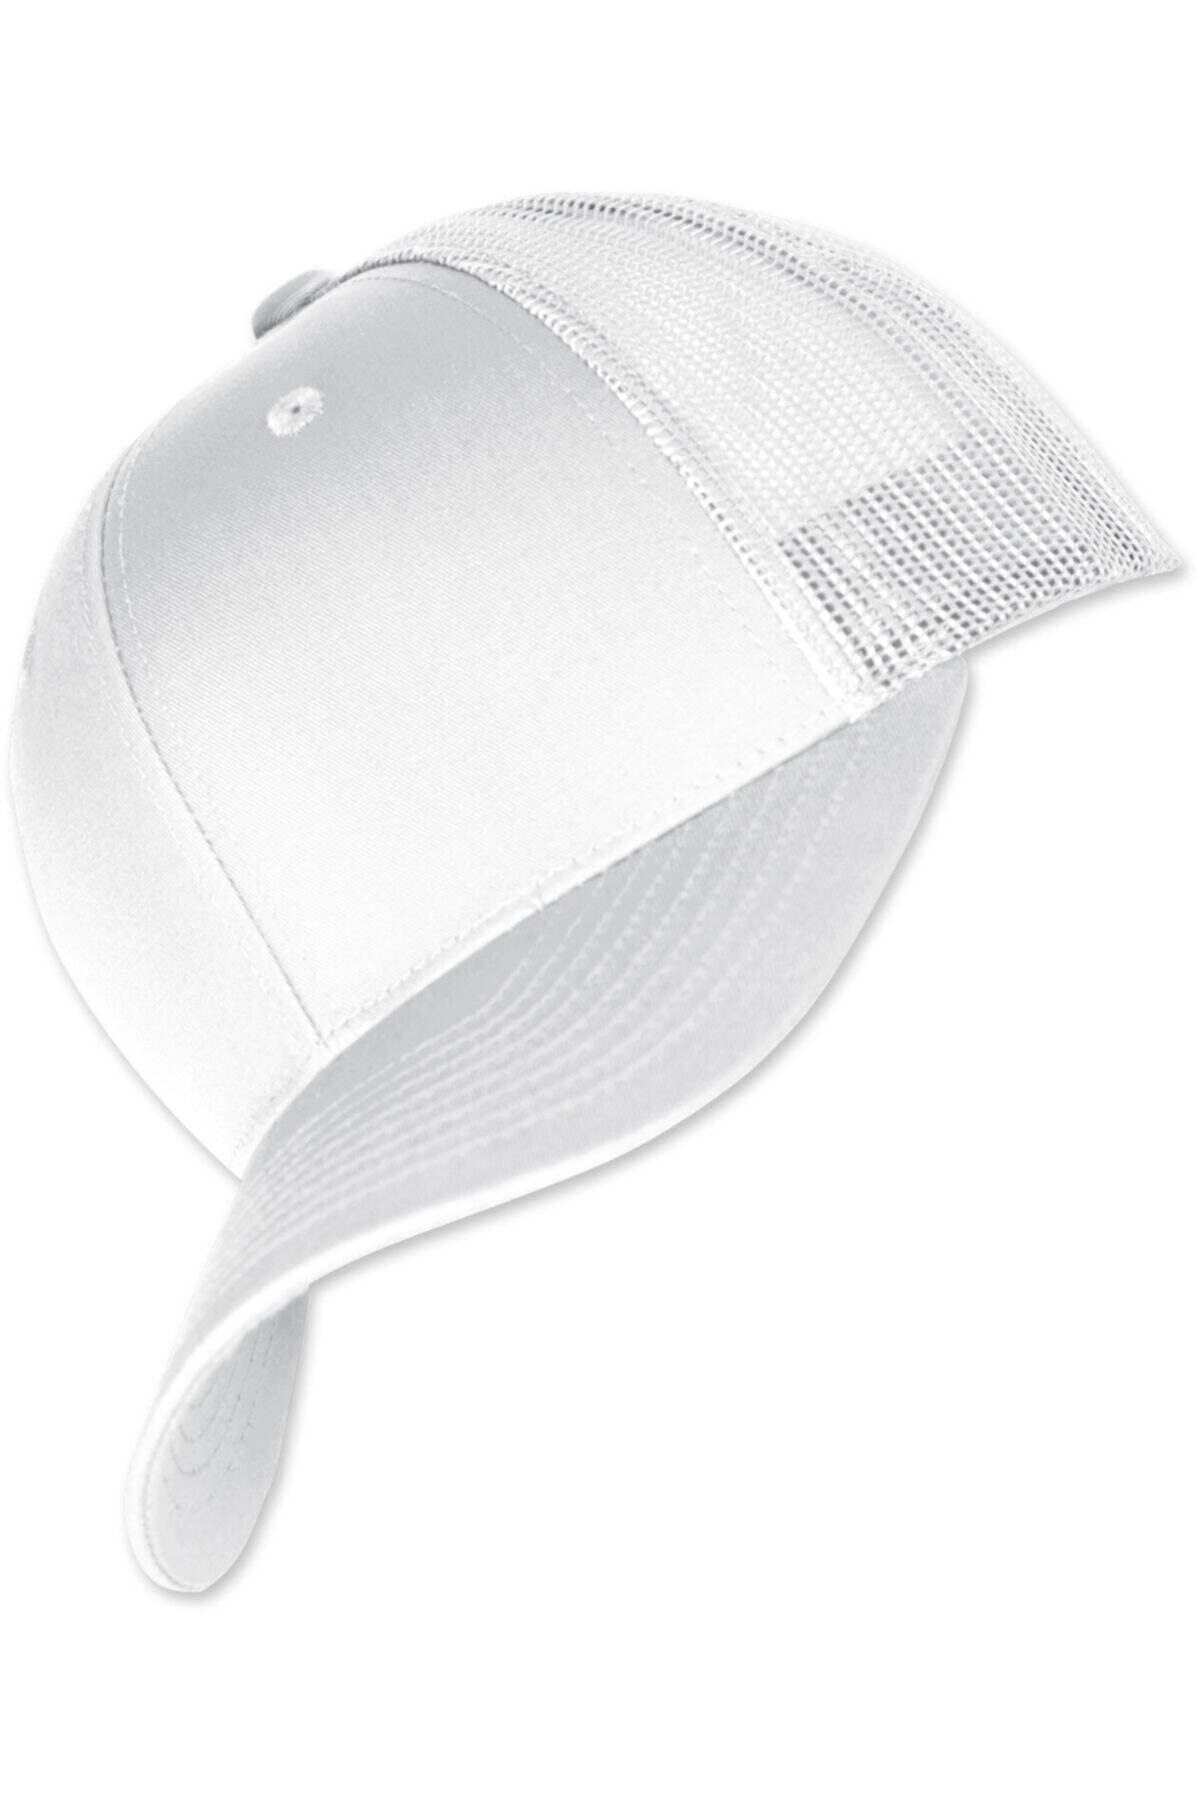 PRC şapka Yazlık Örme Fileli Düz Renk Arkası Ayaralanabilir Şapka Kepler Örme Fileli Şapka Pamuklu Şapka